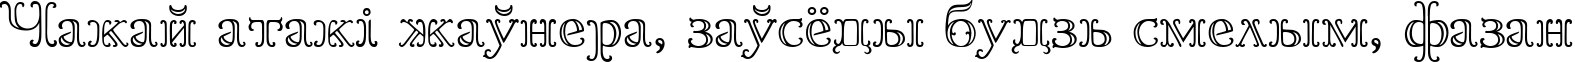 Пример написания шрифтом Goudy OrnateC текста на белорусском